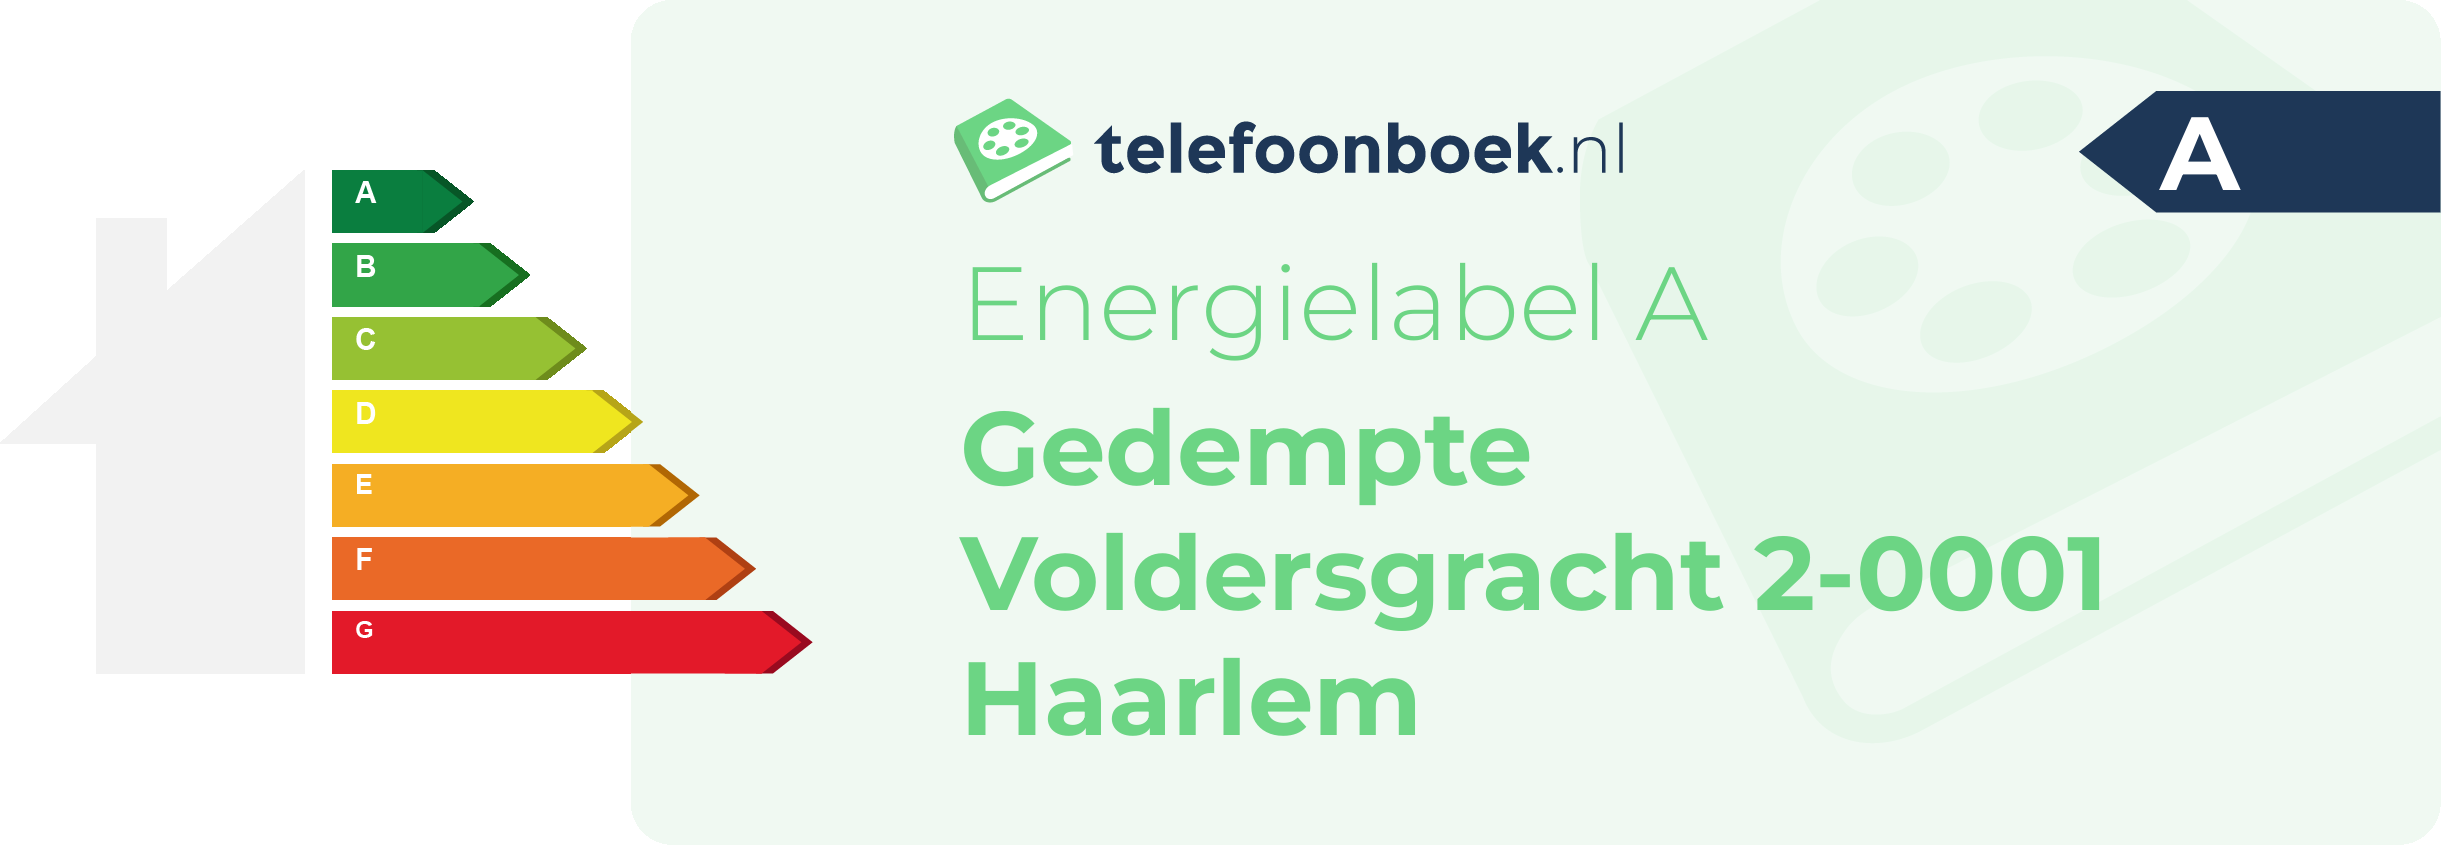 Energielabel Gedempte Voldersgracht 2-0001 Haarlem